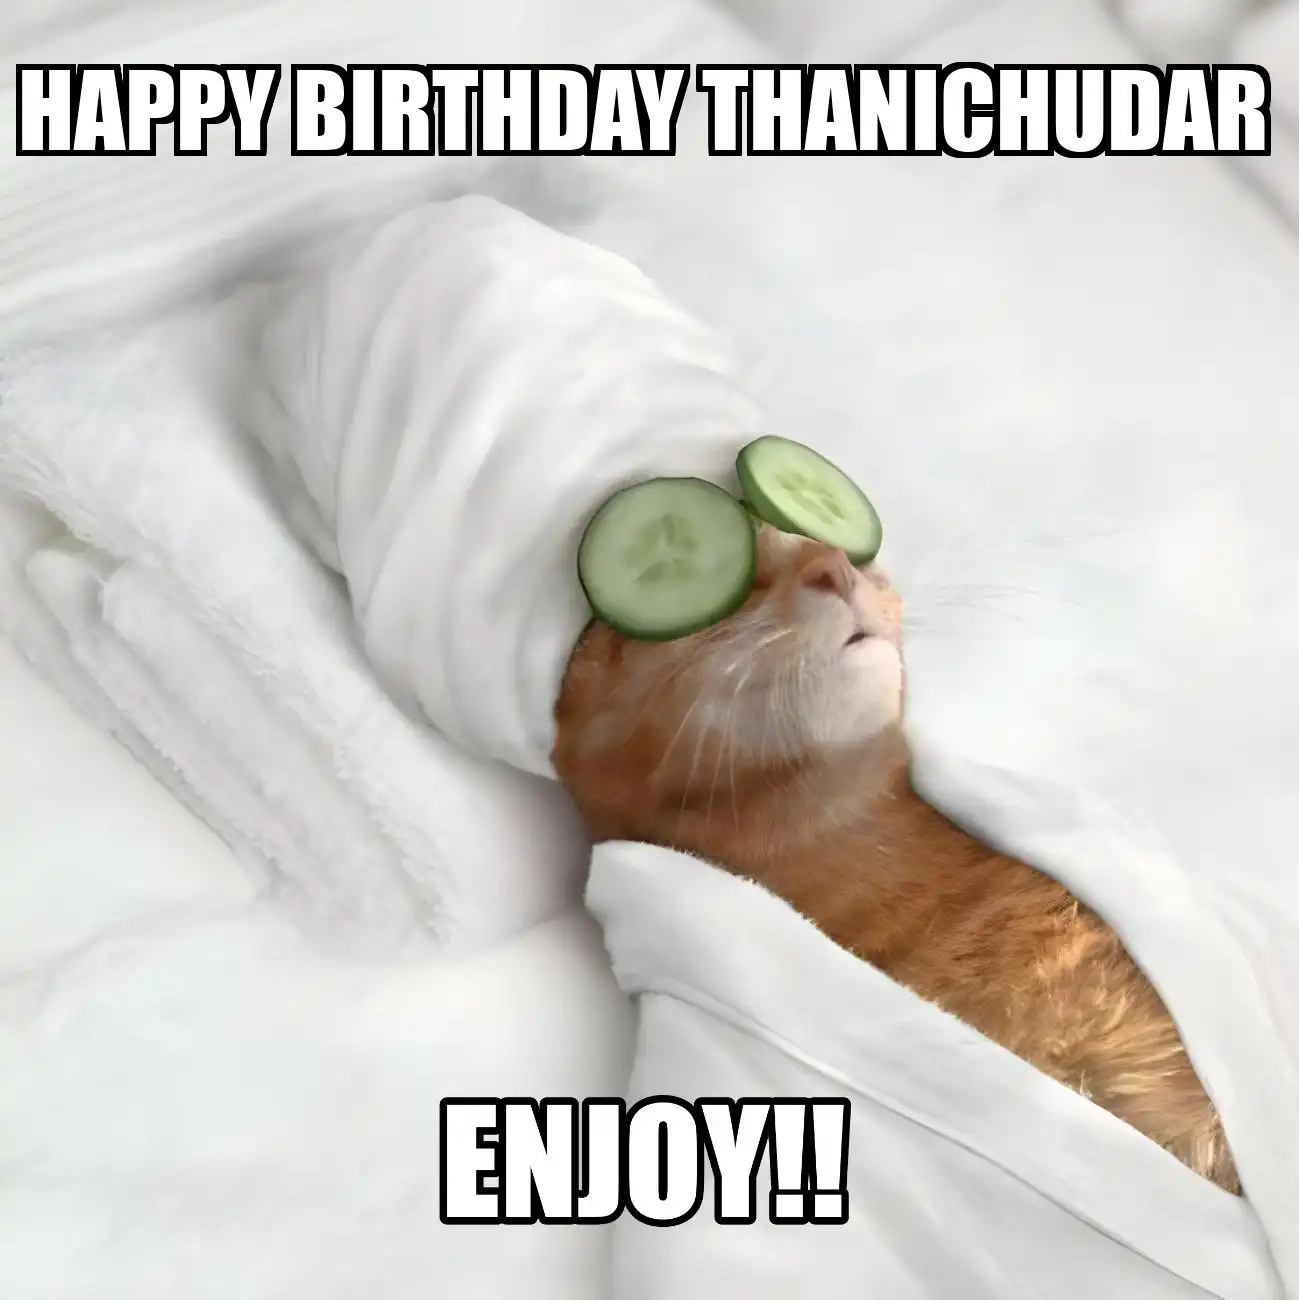 Happy Birthday Thanichudar Enjoy Cat Meme